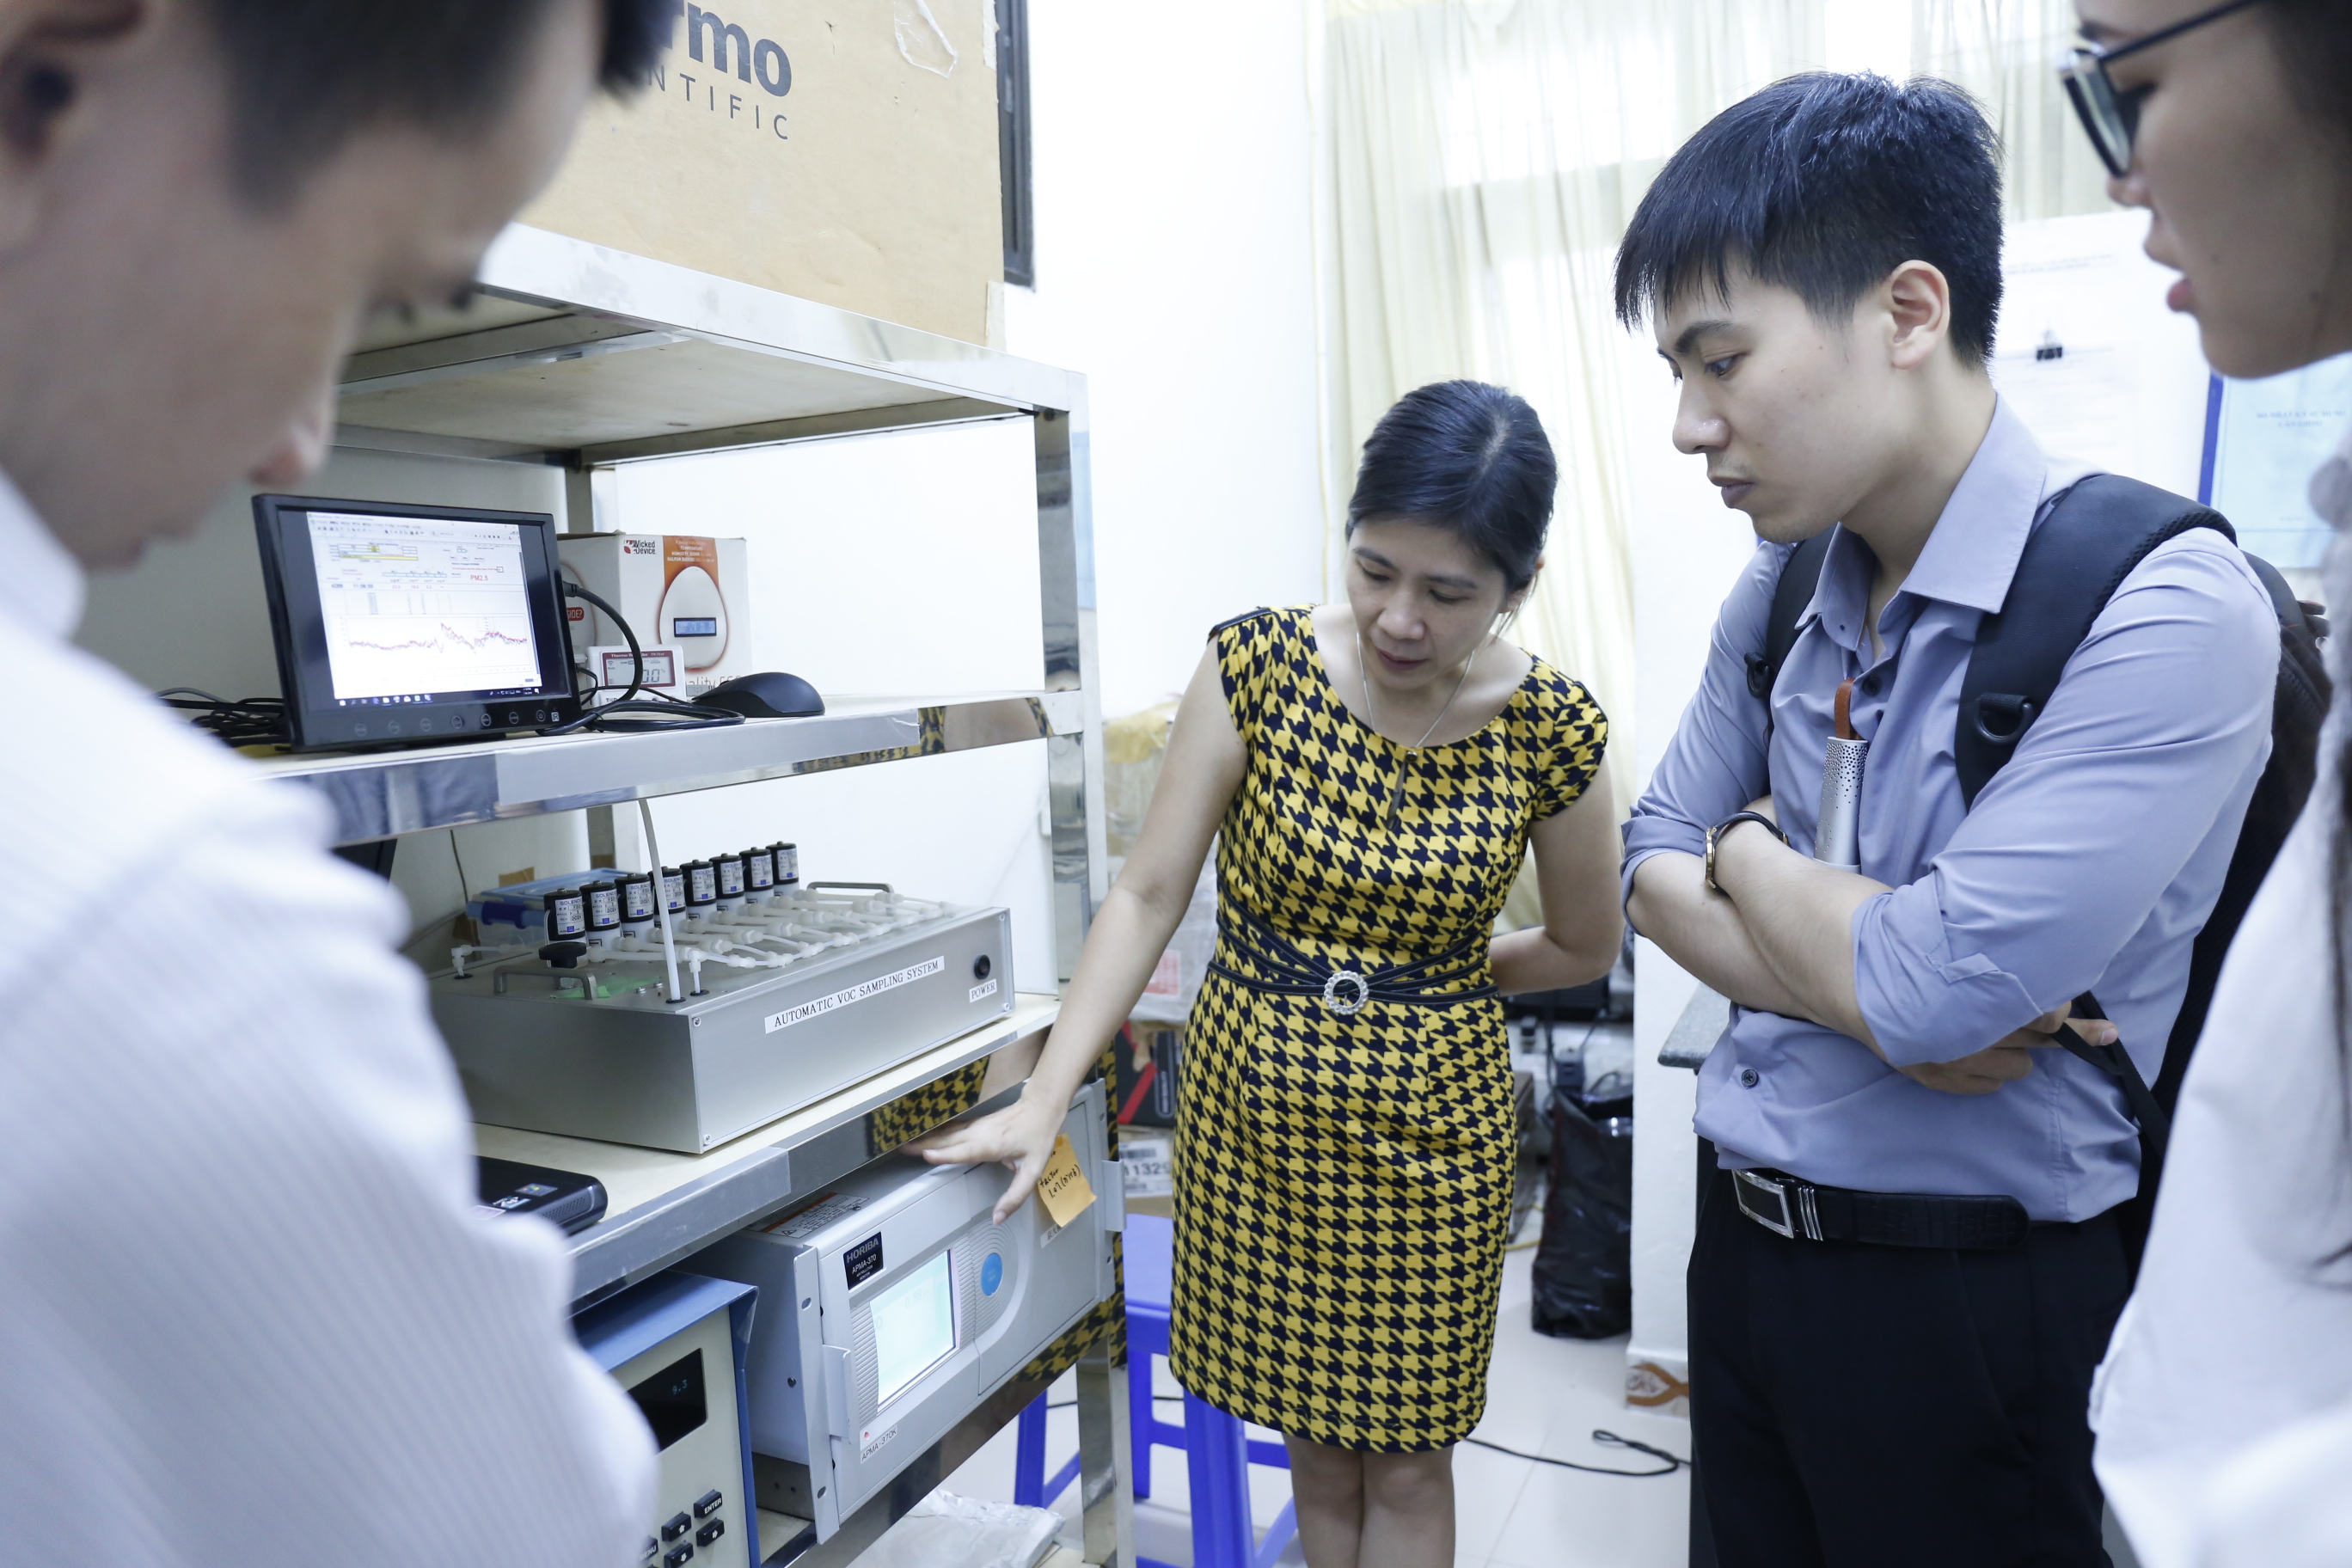 TS. Lý Bích Thủy (bên trái) giới thiệu các thiết bị đo không khí tại viện INEST trong buổi tập tuấn “Hiểu về không khí sạch” cho các phóng viên ở Hà Nội đầu tháng 7/2019. Ảnh: NH